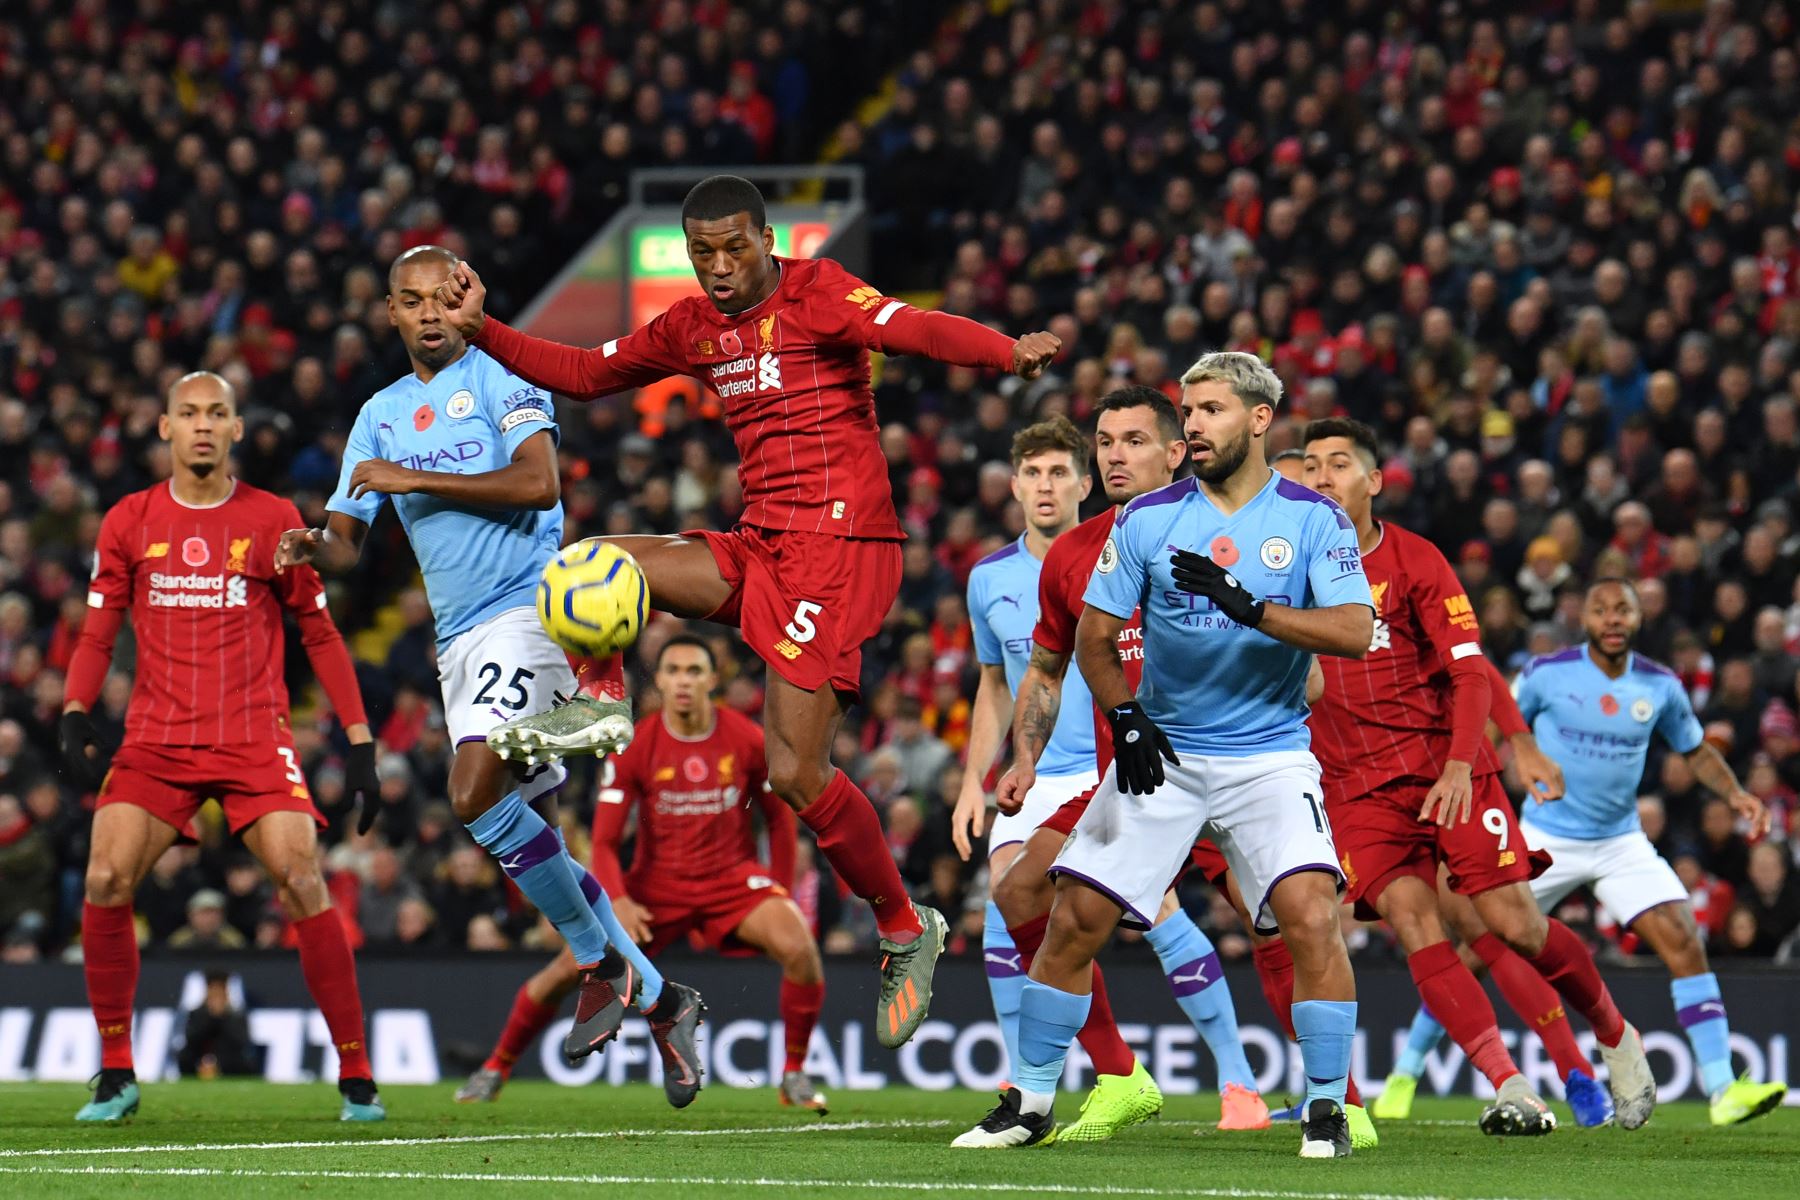 El mediocampista holandés de Liverpool Georginio Wijnaldum  controla el balón durante el partido de fútbol de la Premier League inglesa entre Liverpool y Manchester City.
Foto: AFP